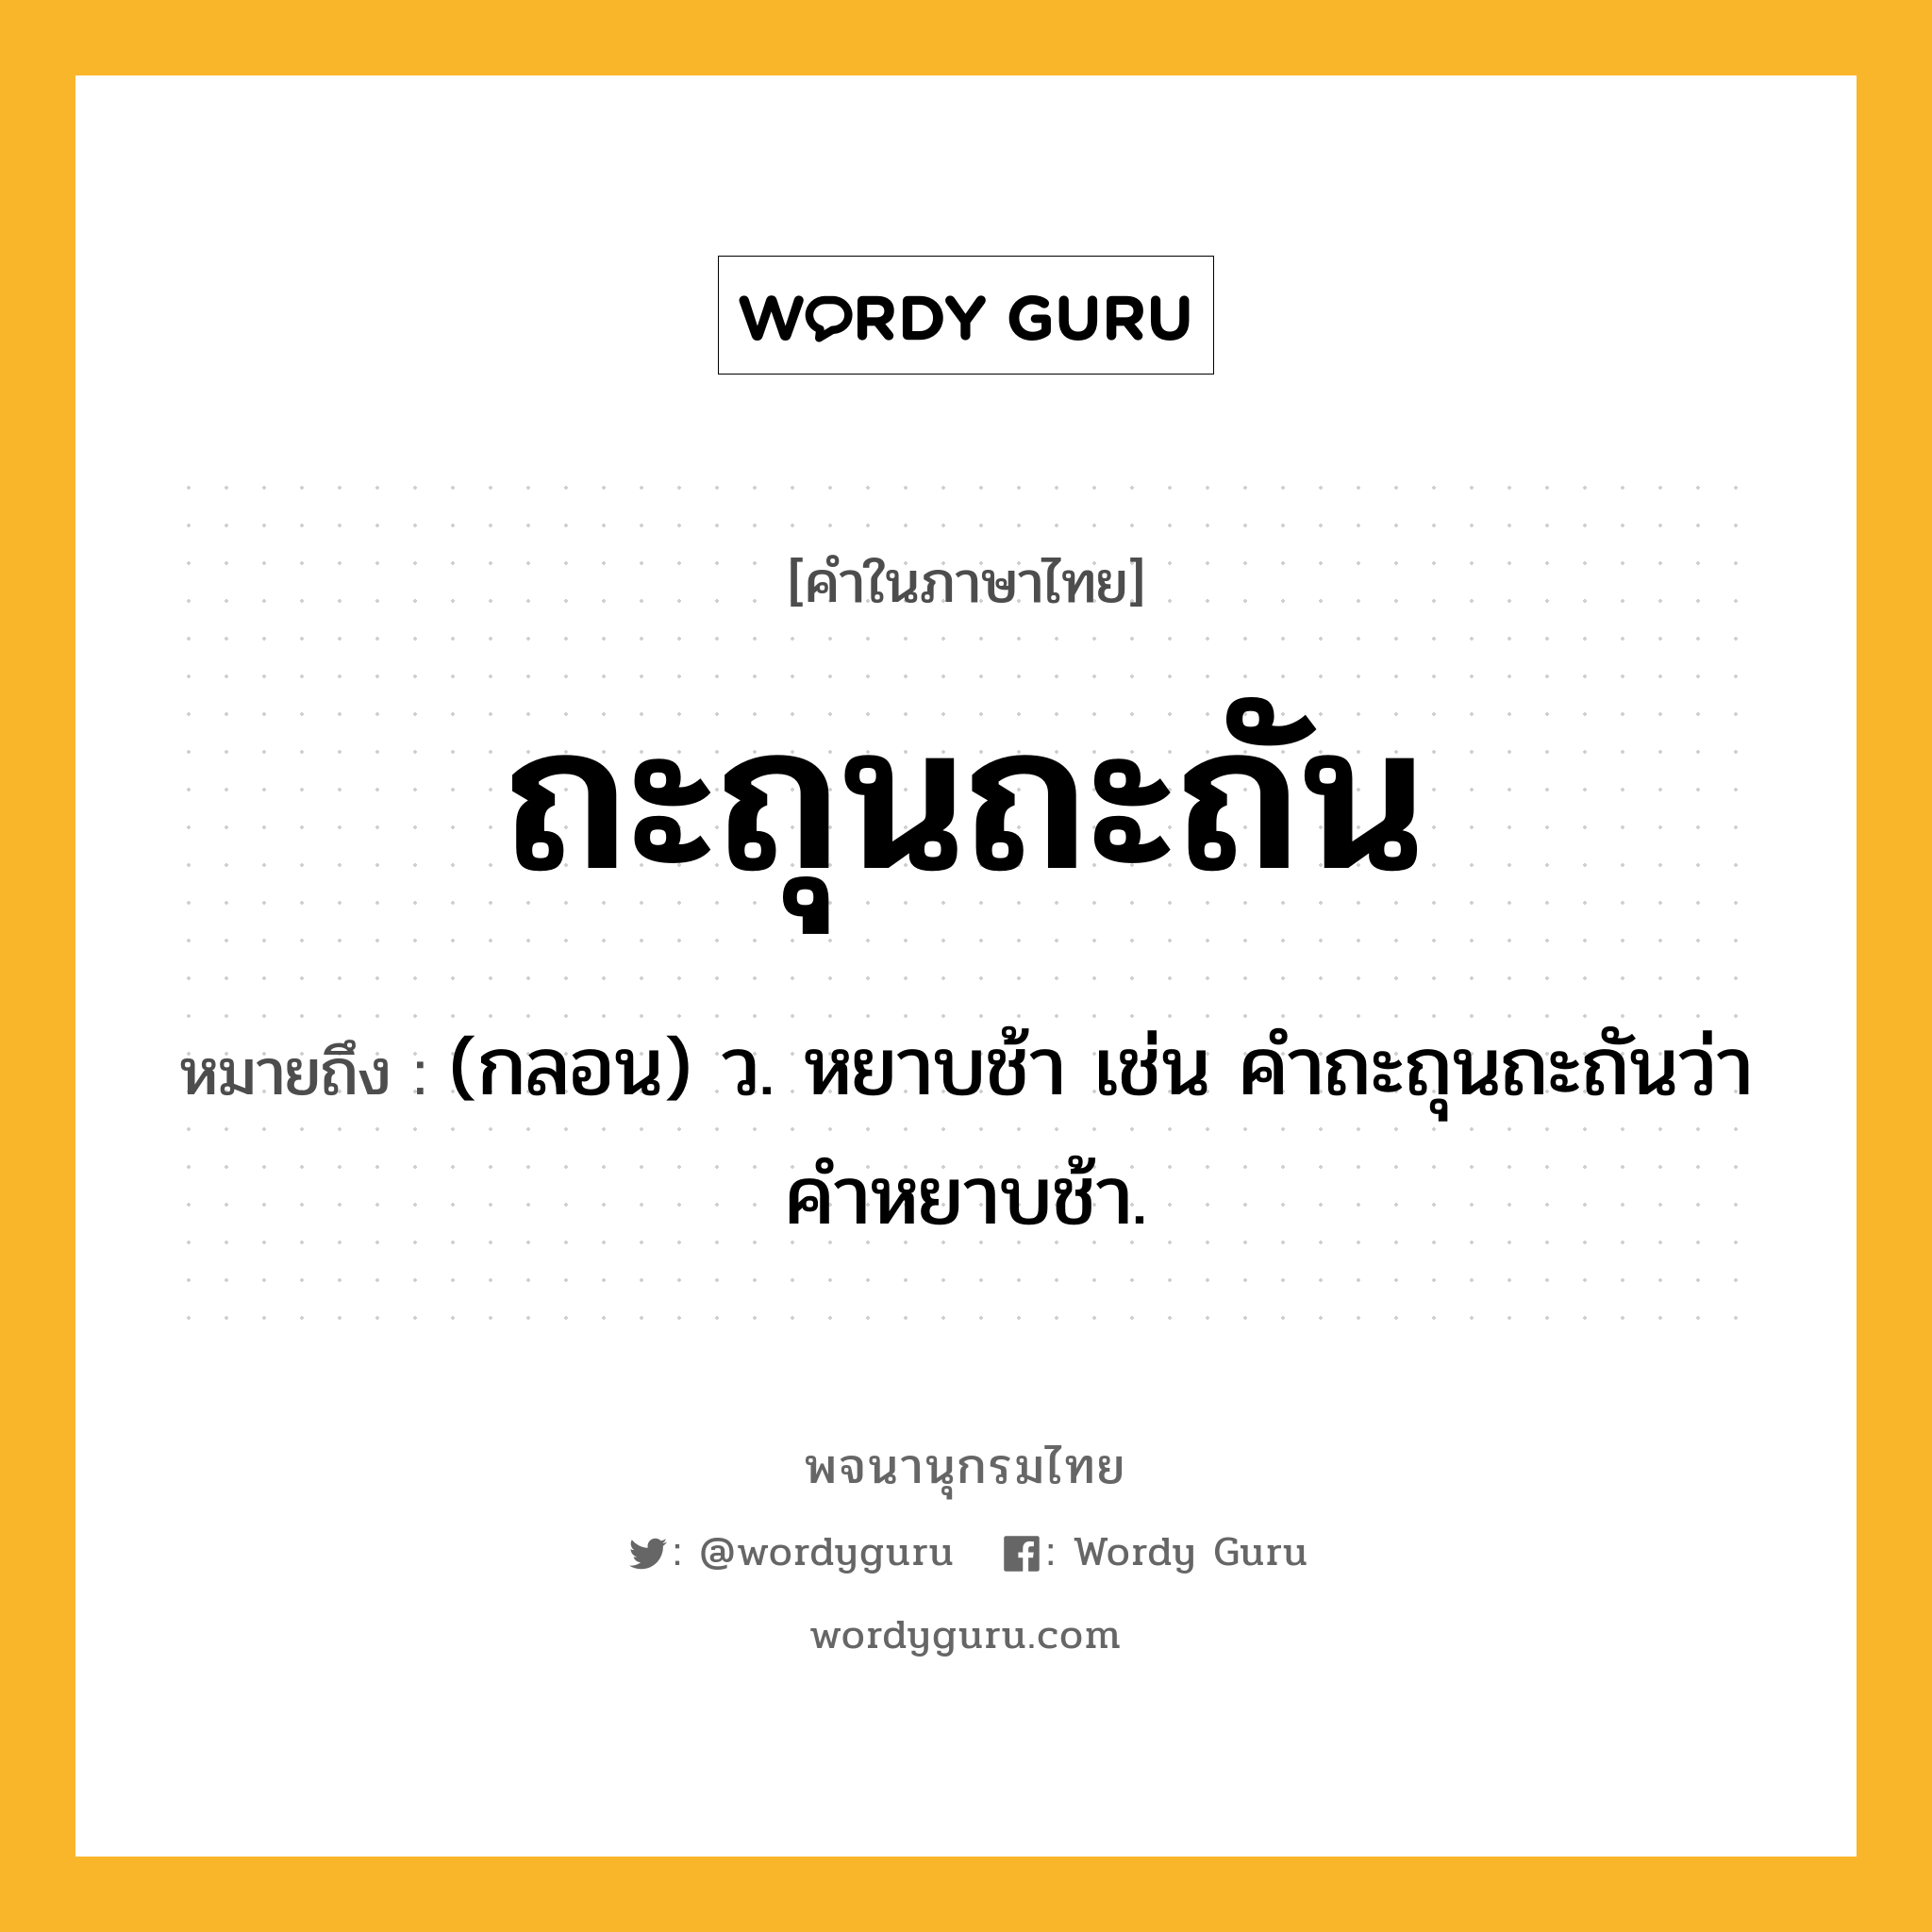 ถะถุนถะถัน ความหมาย หมายถึงอะไร?, คำในภาษาไทย ถะถุนถะถัน หมายถึง (กลอน) ว. หยาบช้า เช่น คําถะถุนถะถันว่า คําหยาบช้า.